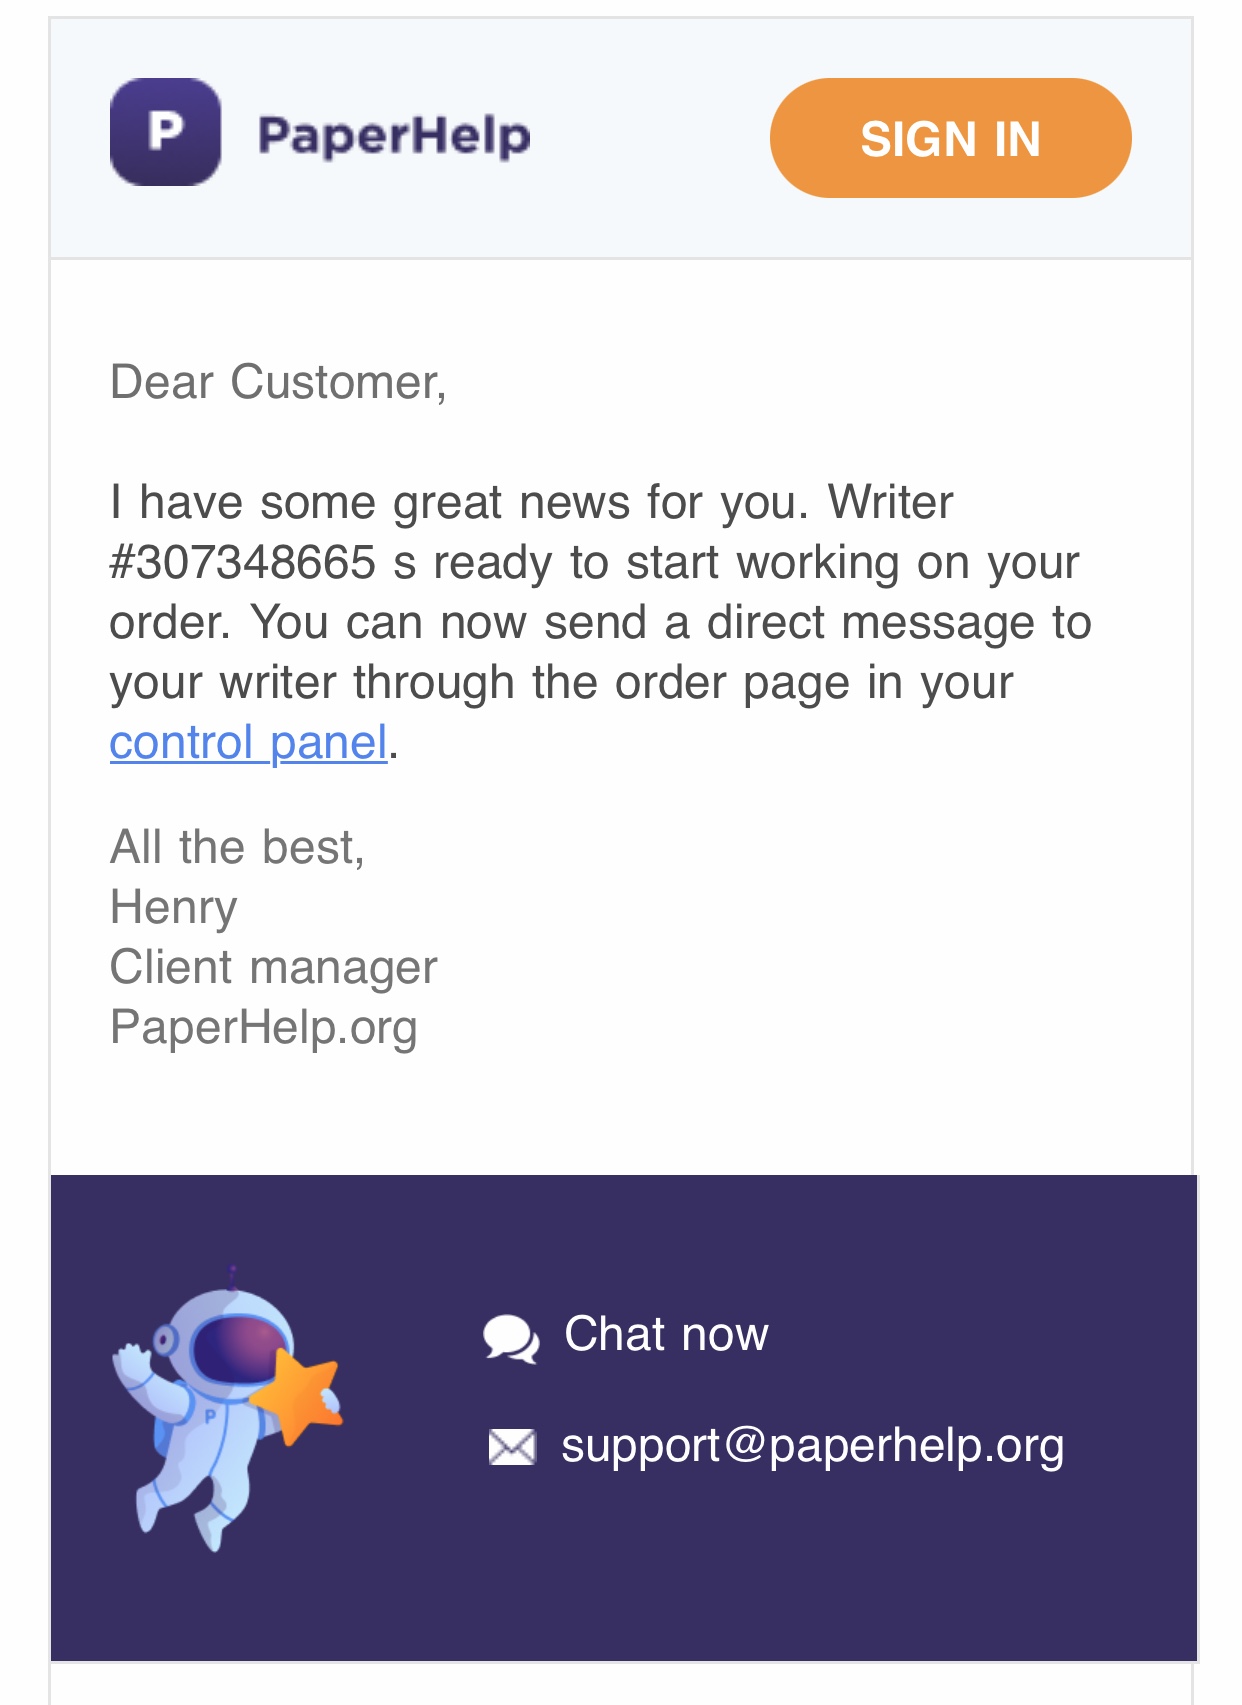 is paperhelp org legit